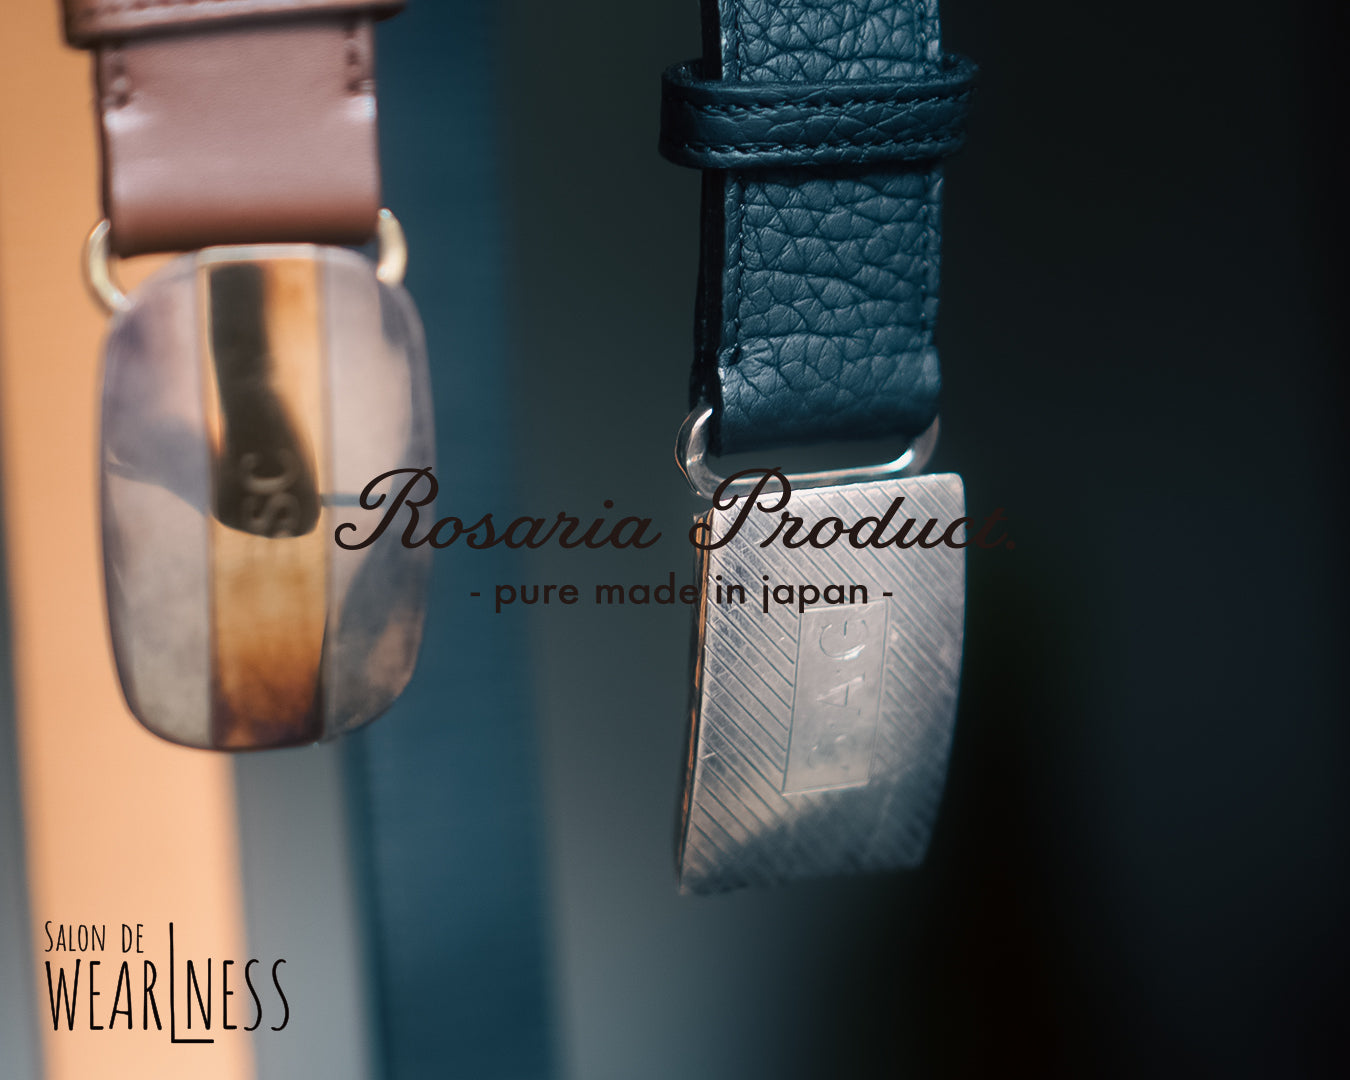 Rosaria Product オーダー会のお知らせ – WEARLNESS